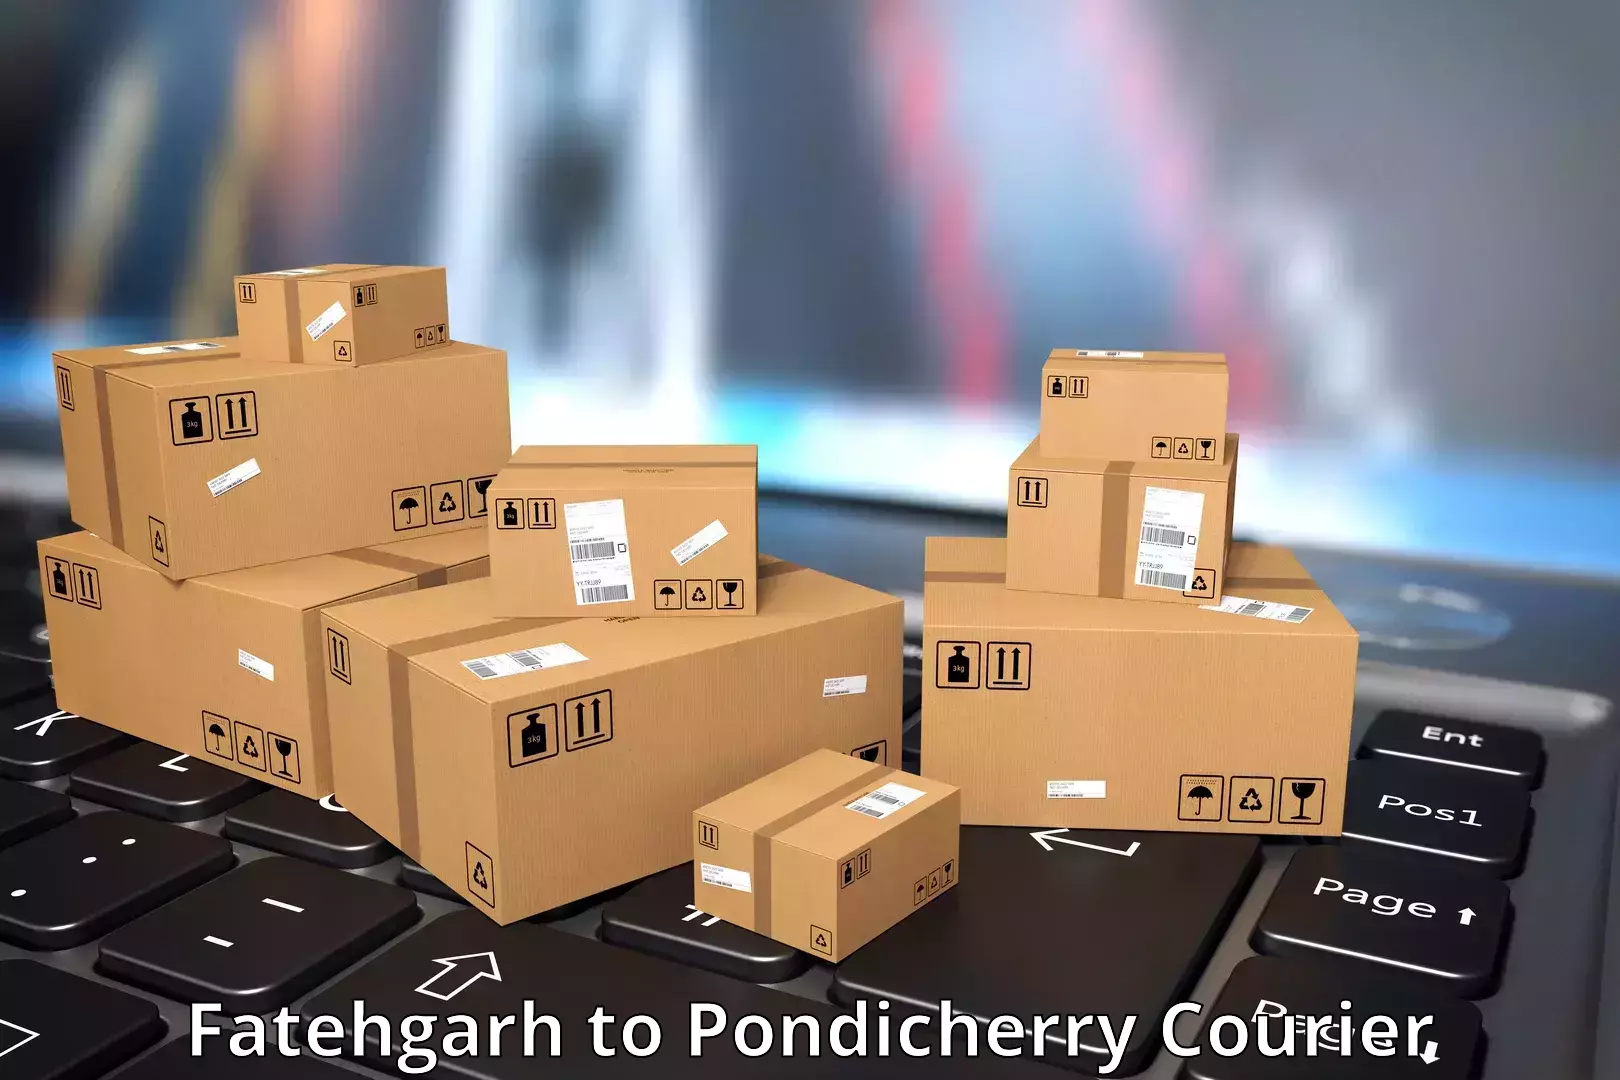 Courier service efficiency Fatehgarh to Pondicherry